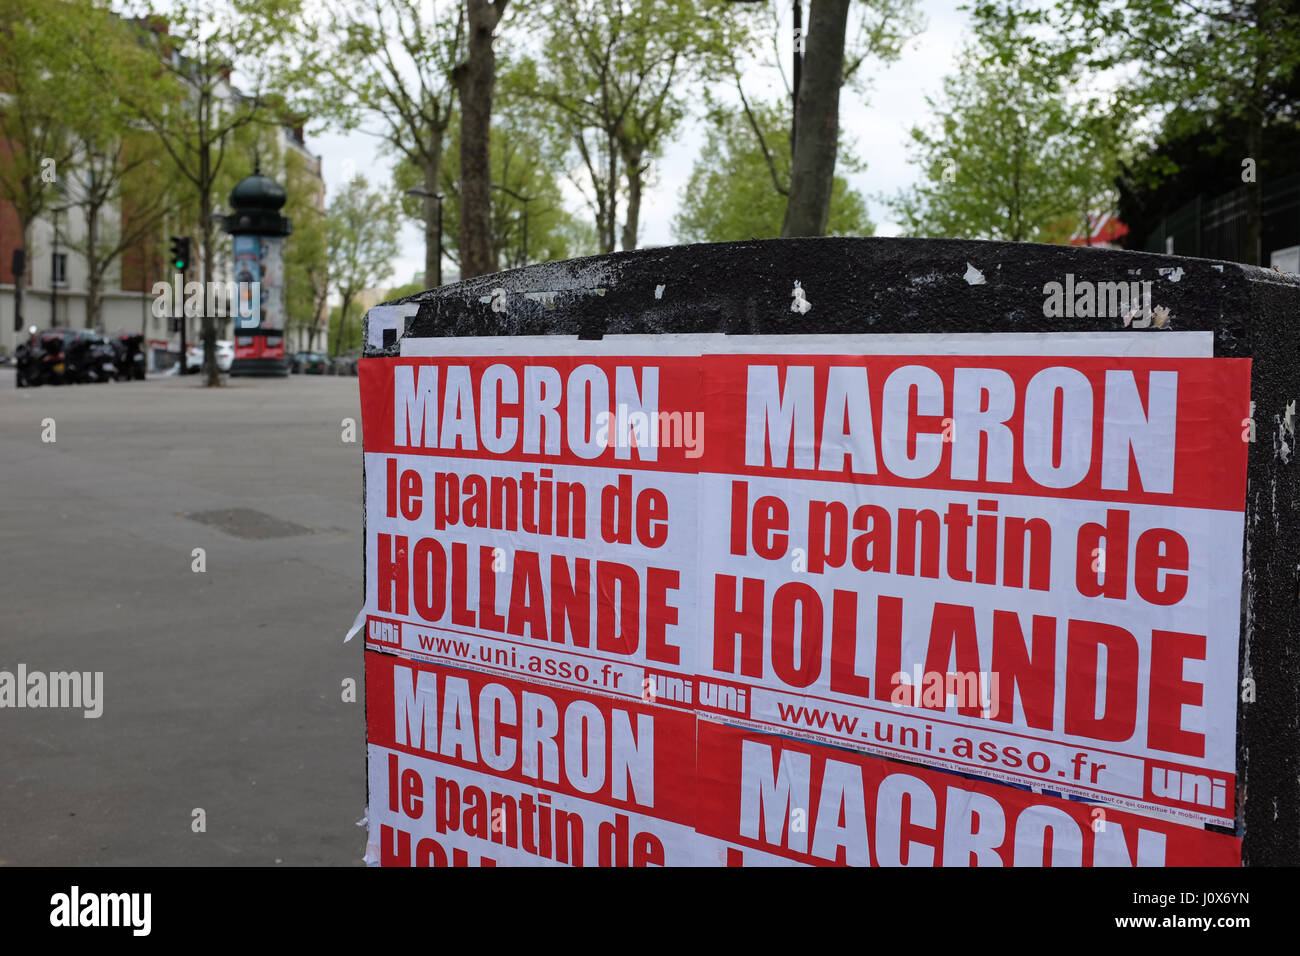 Carteles en París para 2017 campaña presidencial francesa Foto de stock